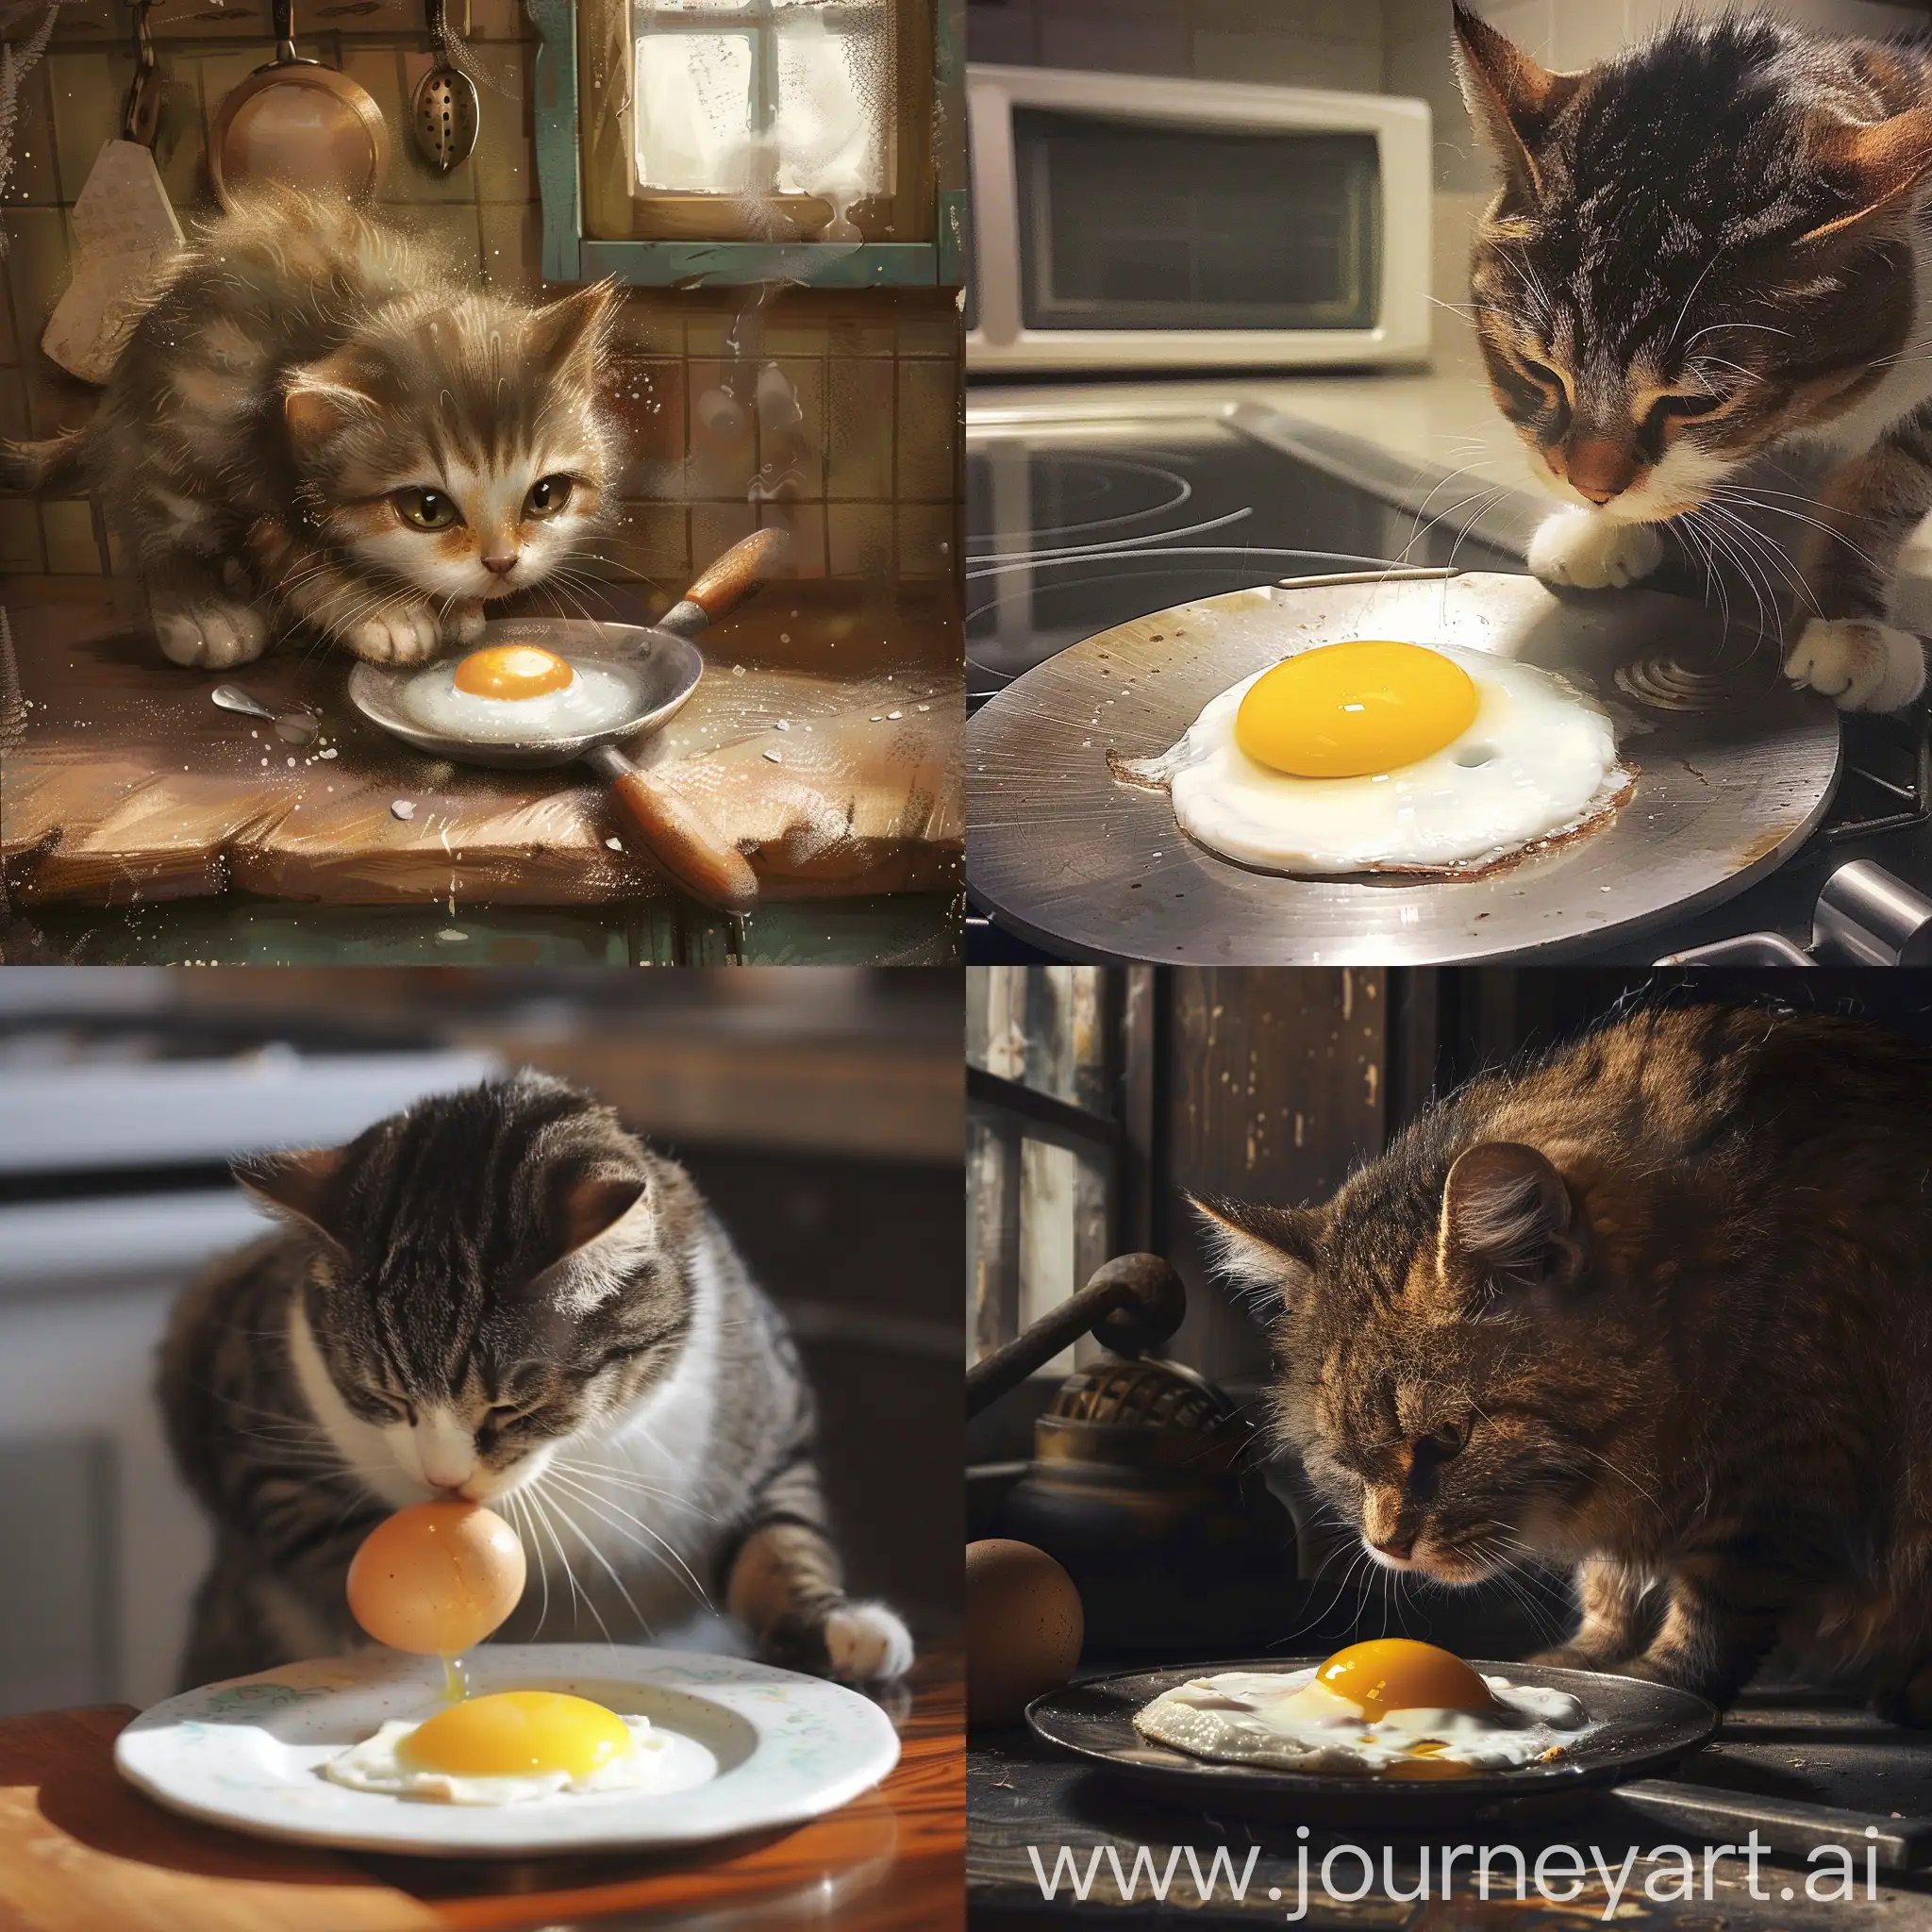 Кот, который на кухне пытается поджарить себе яичницу, но терпит неудачу.